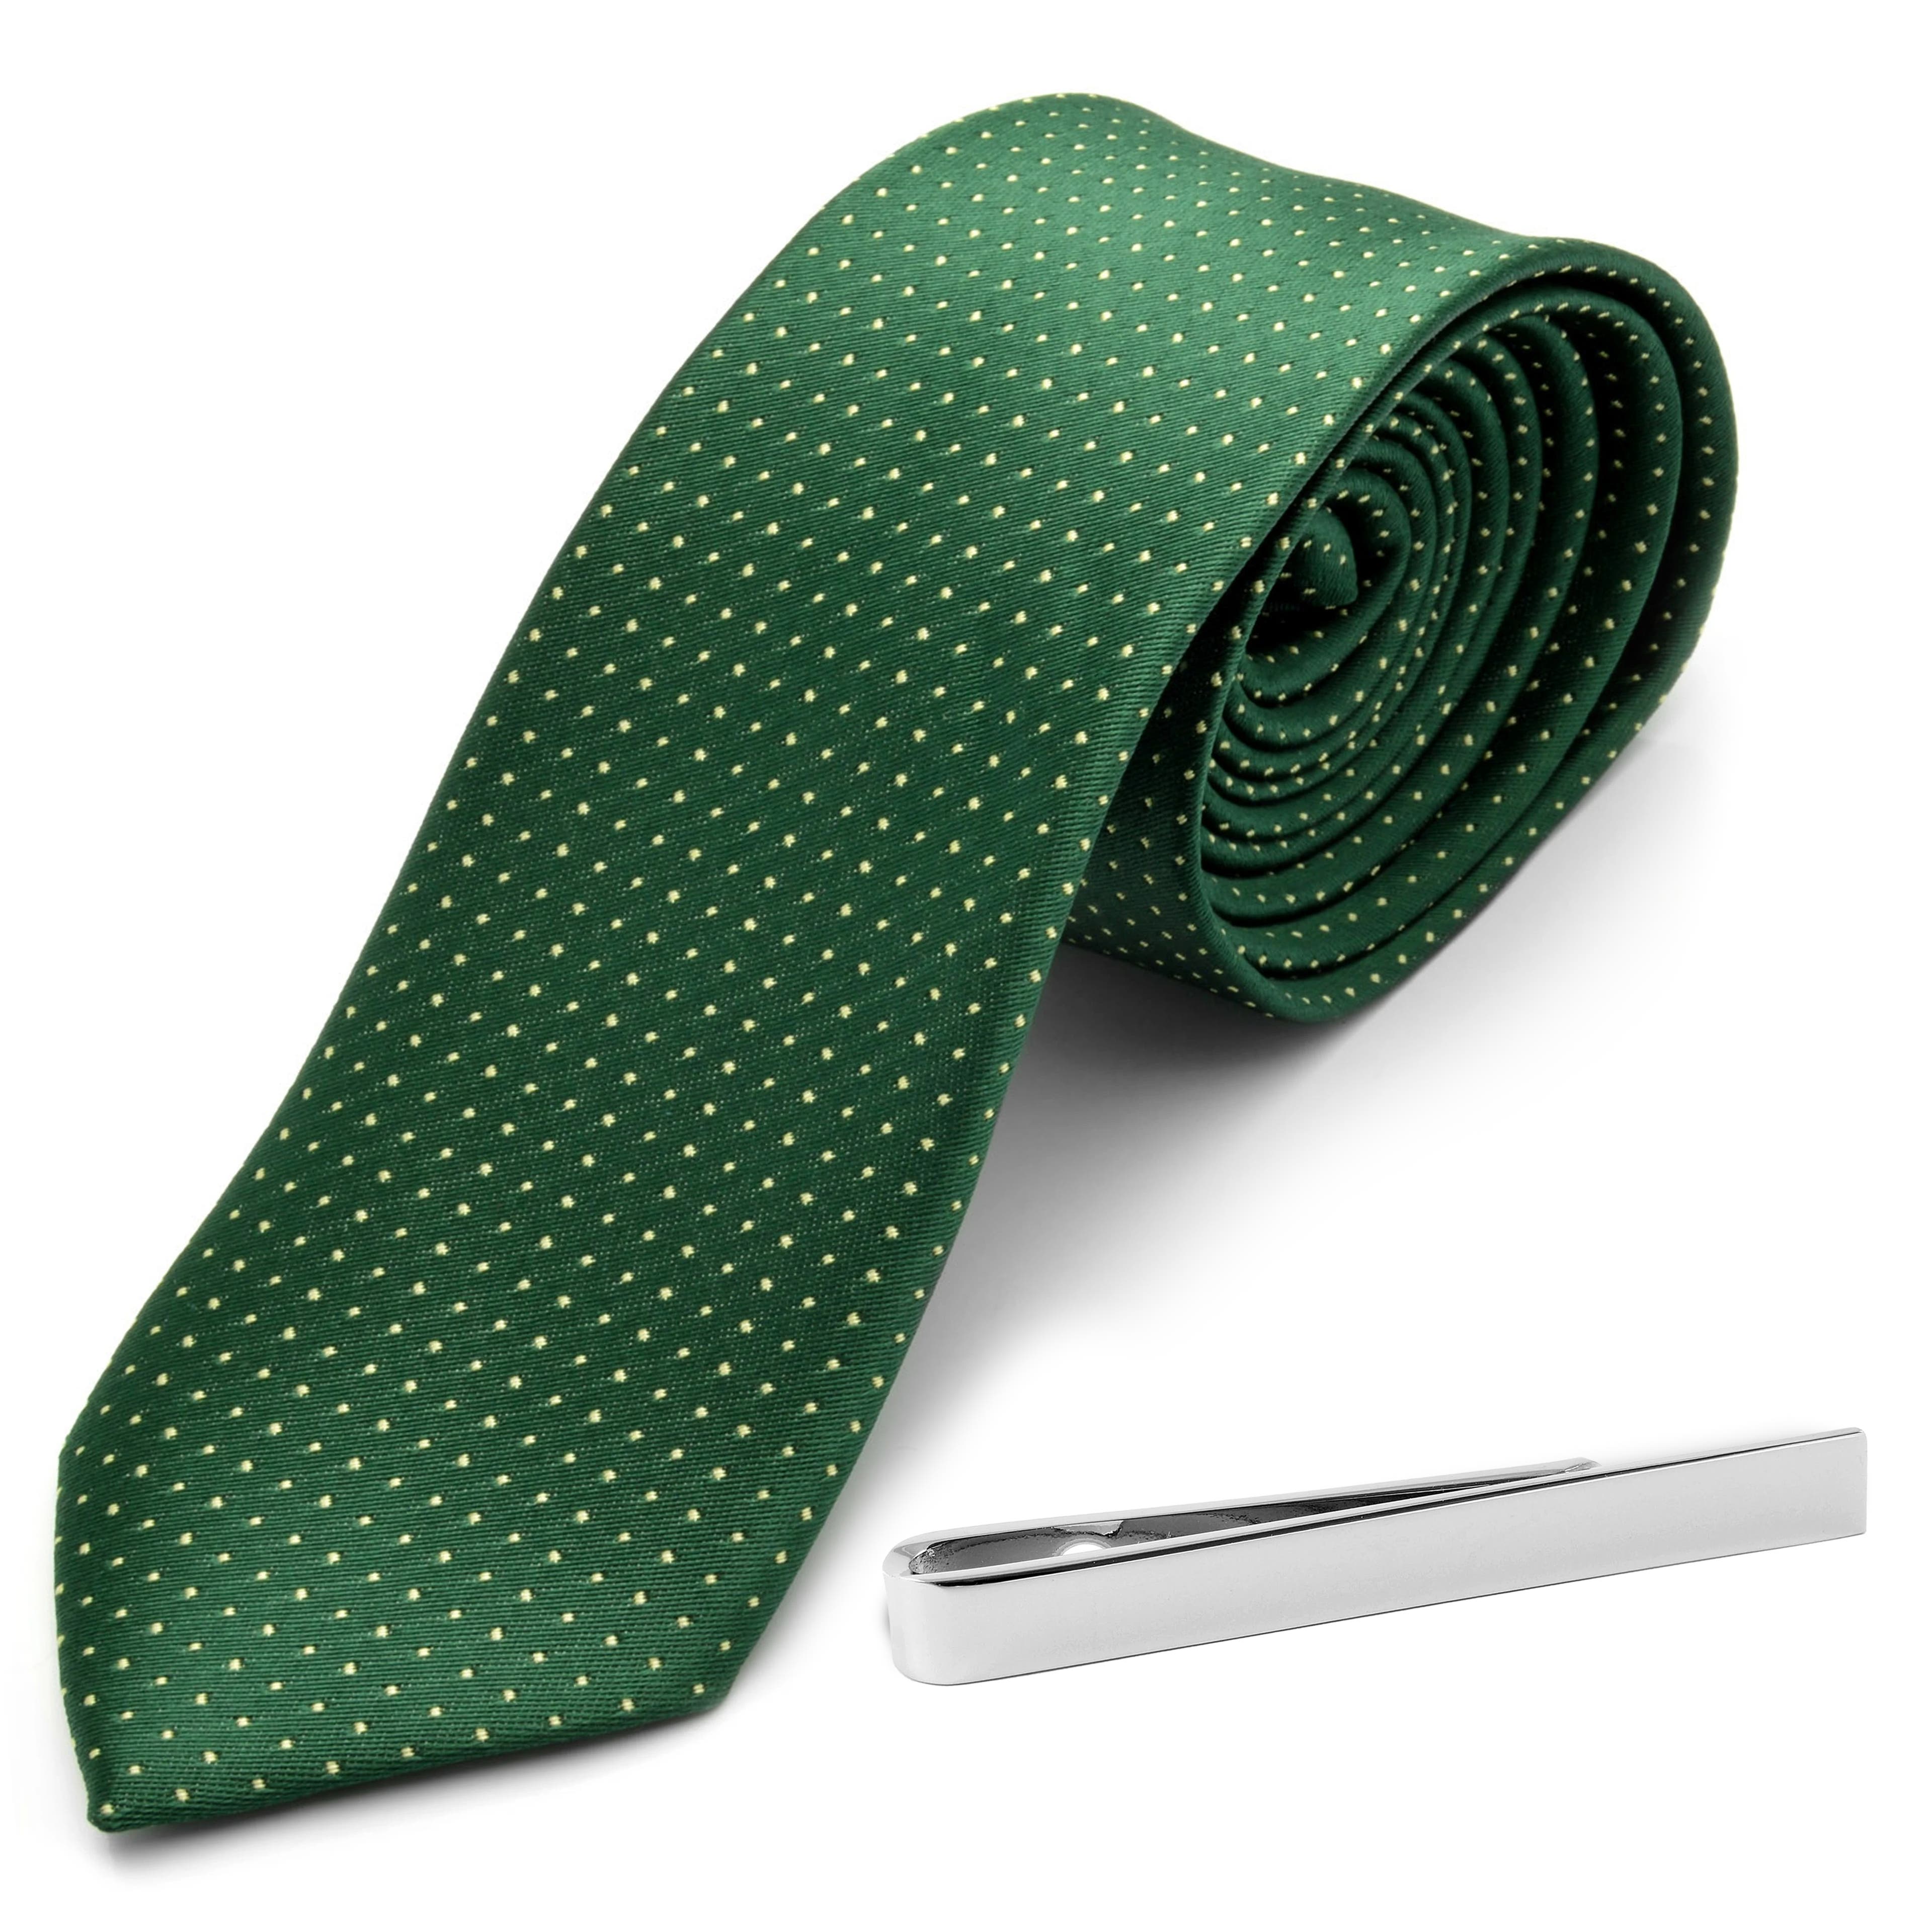 Grün gepunktete Krawatte und silberfarbenes Krawattenhalter-Set